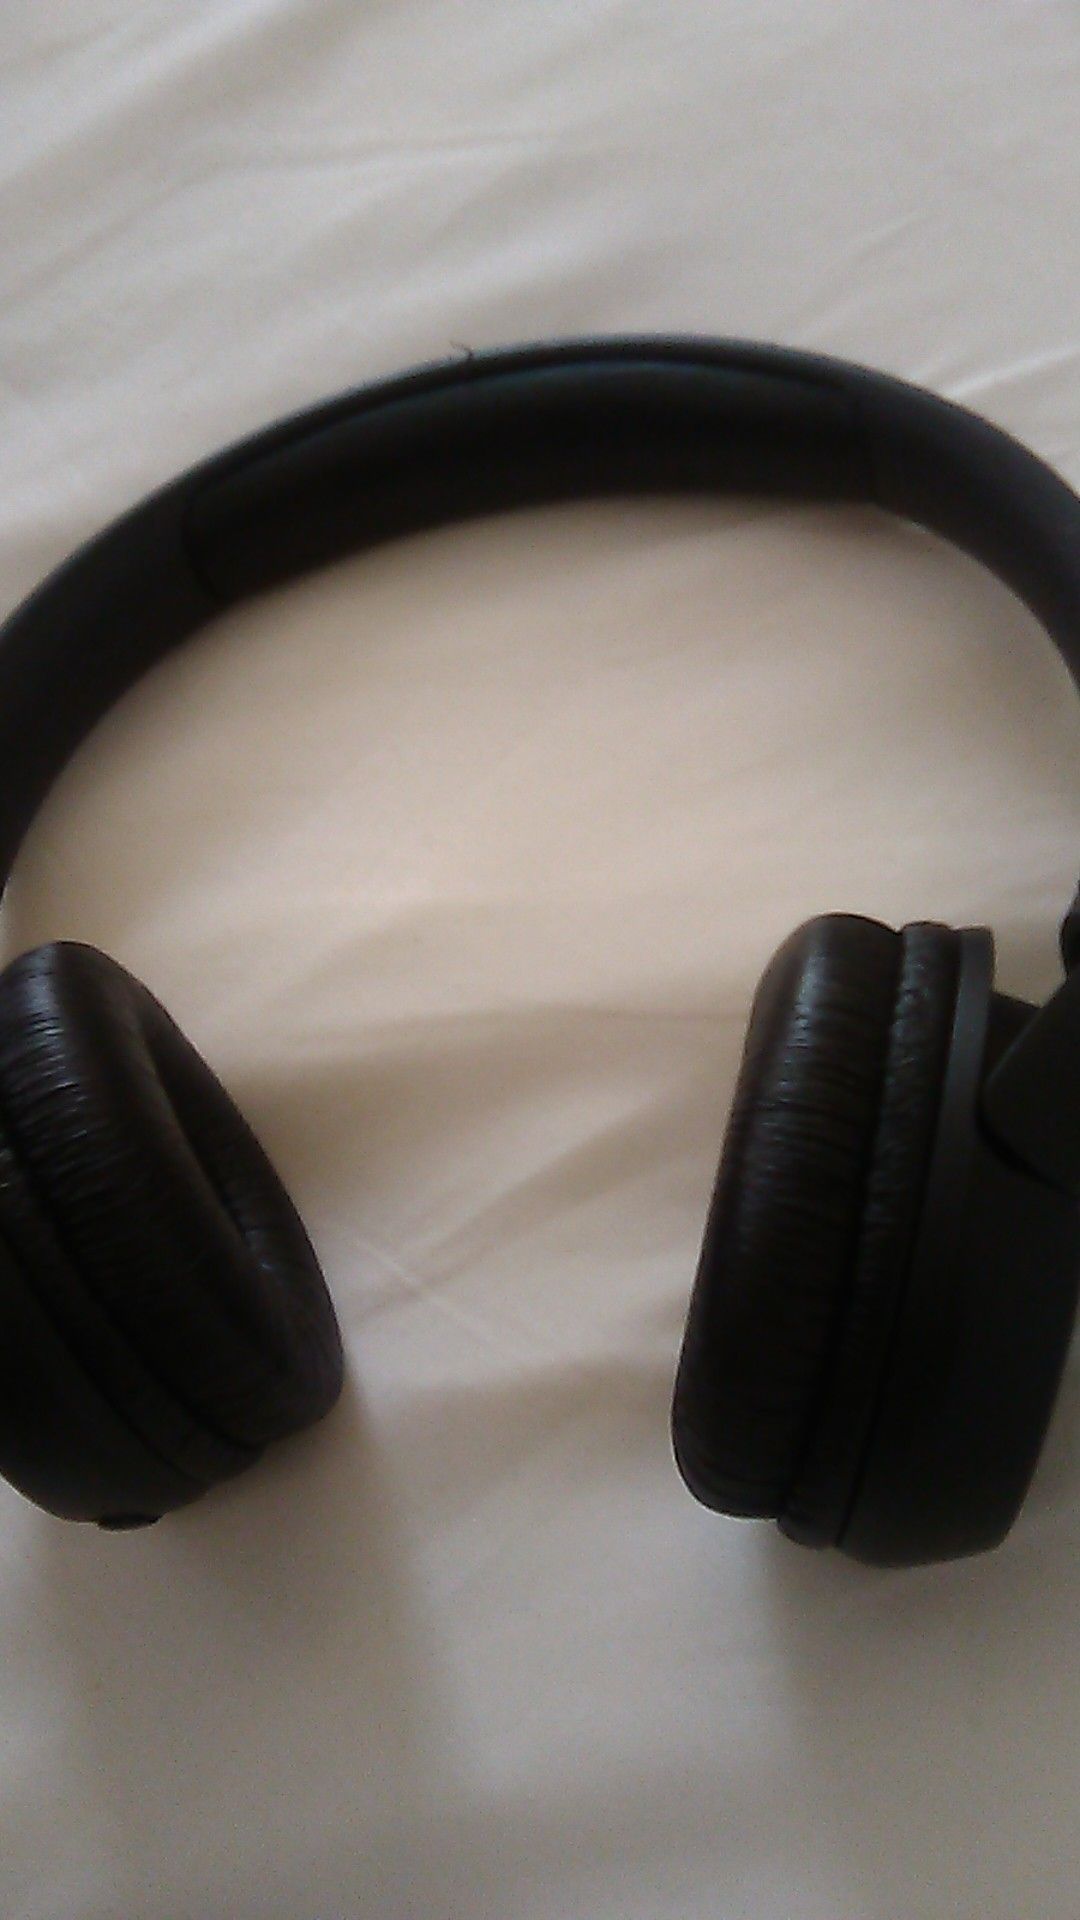 Jbl Bluetooth headphones